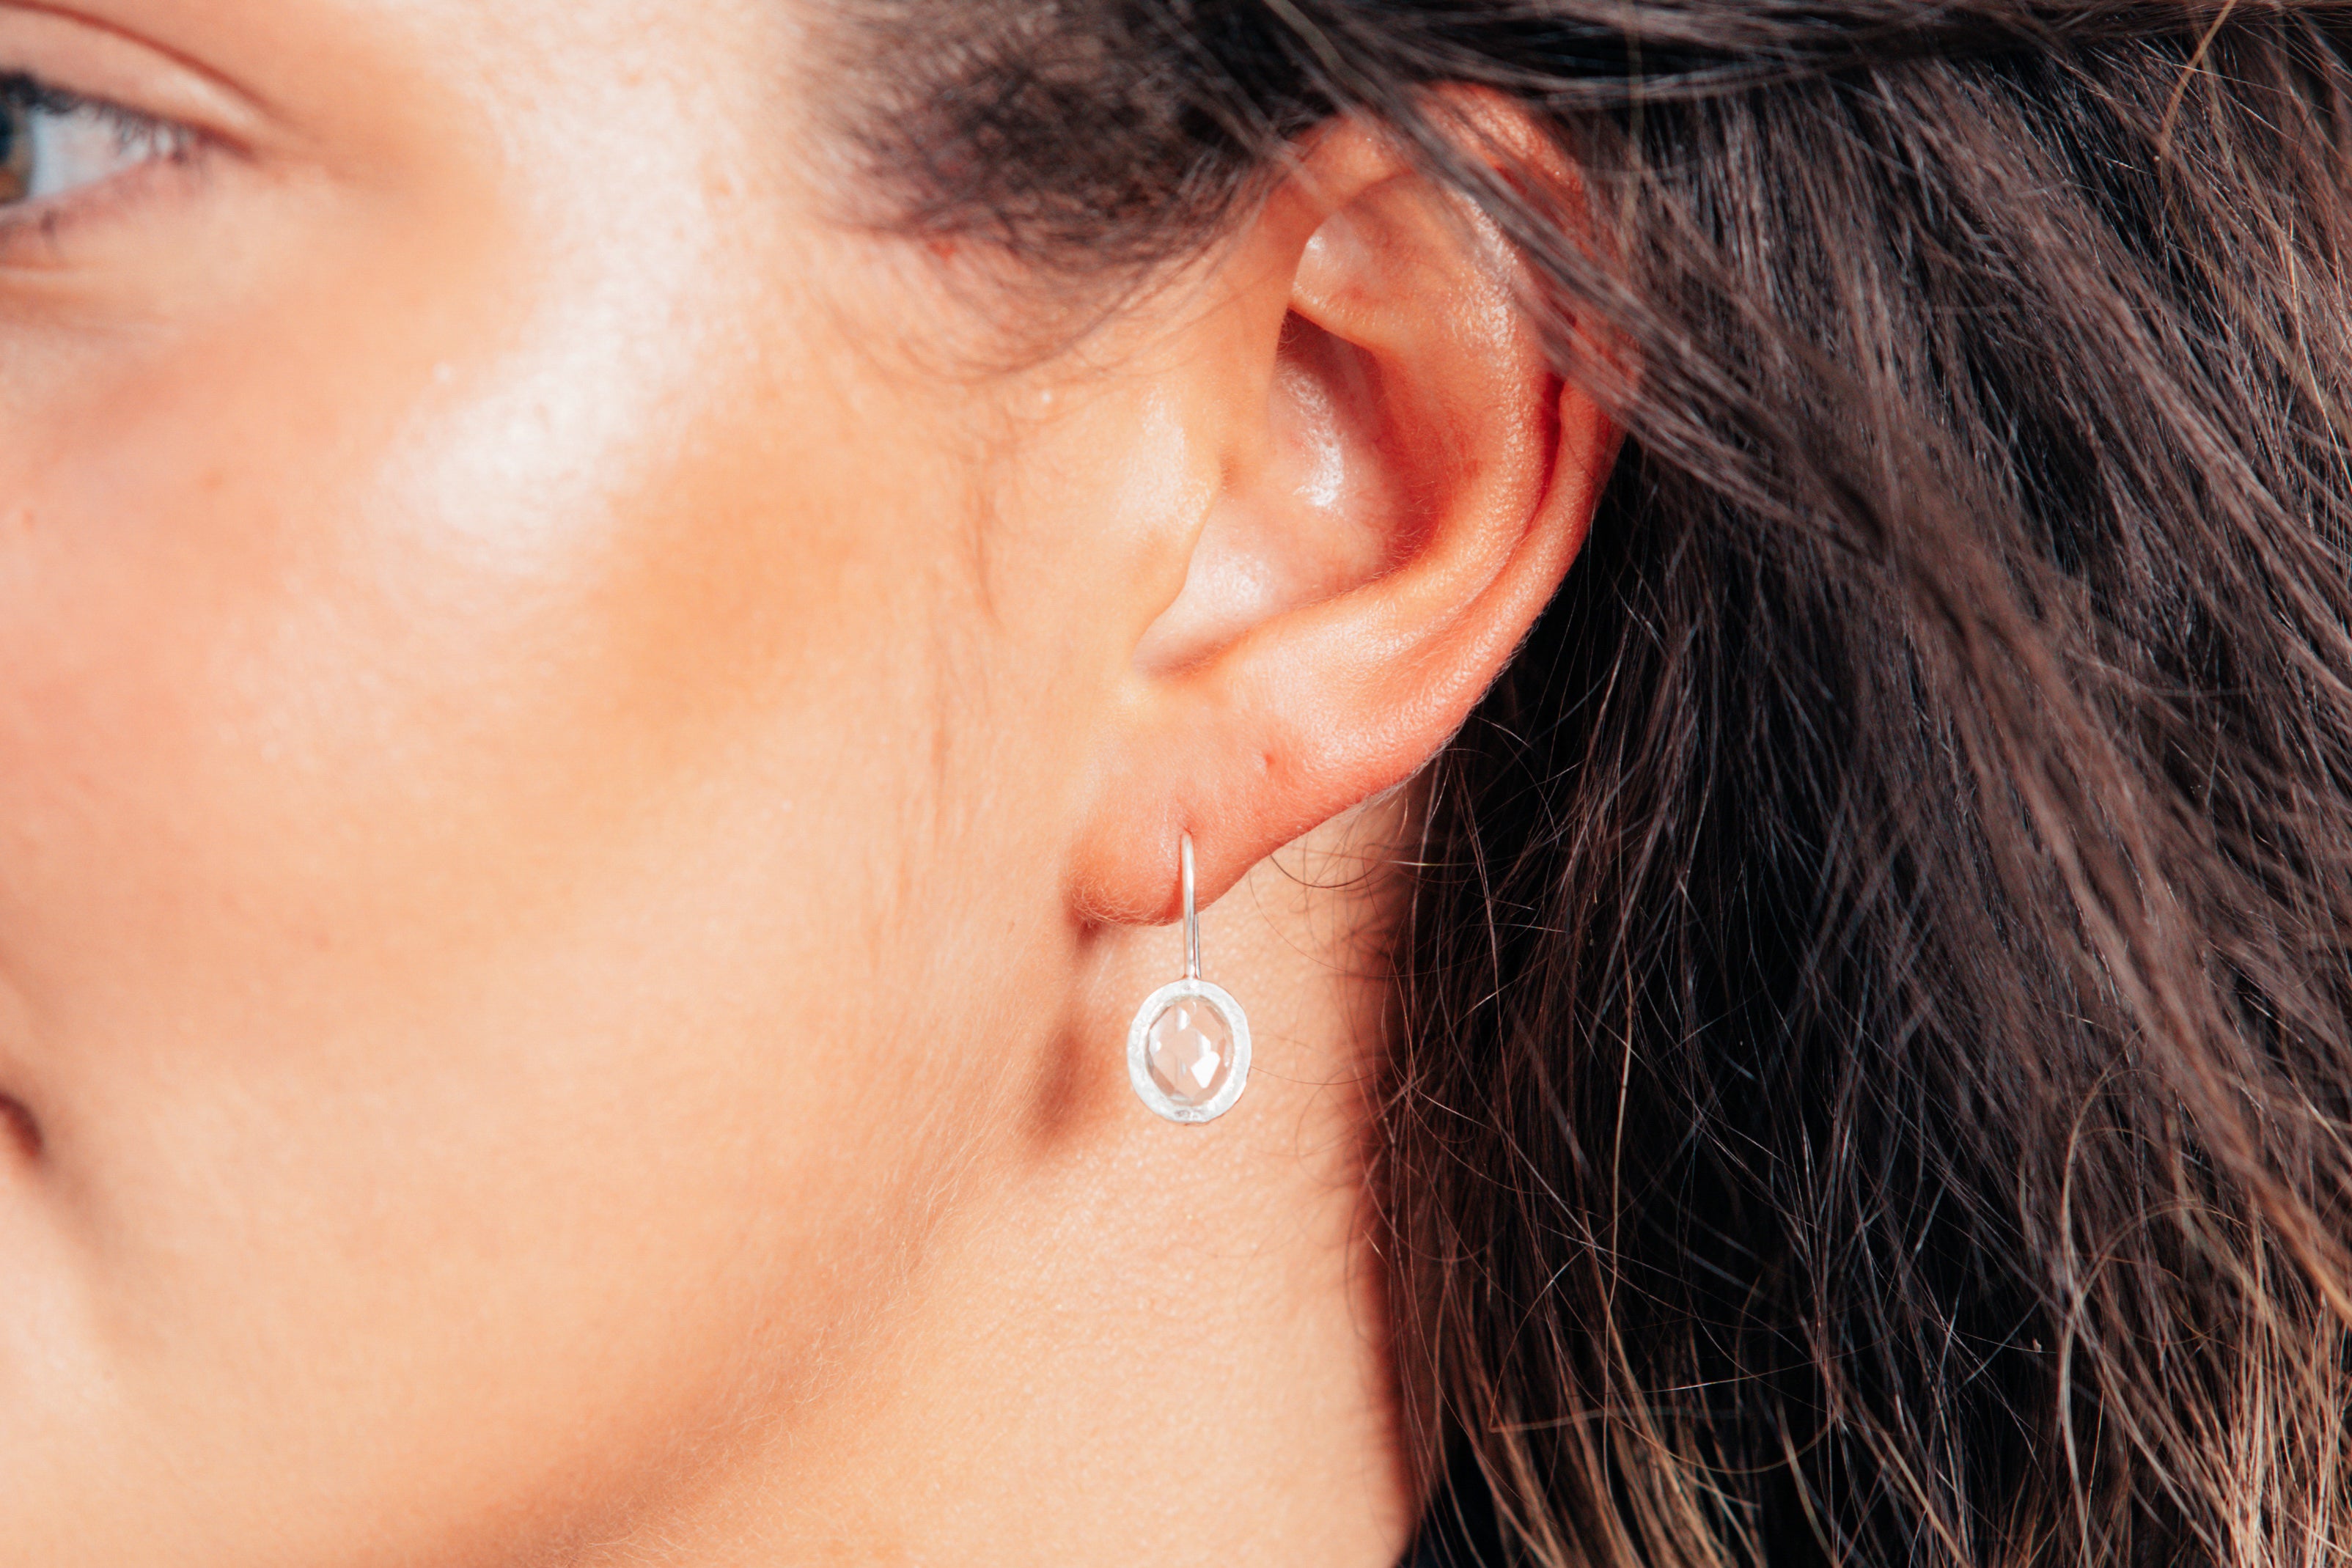 Silver Oval Crystal Earrings